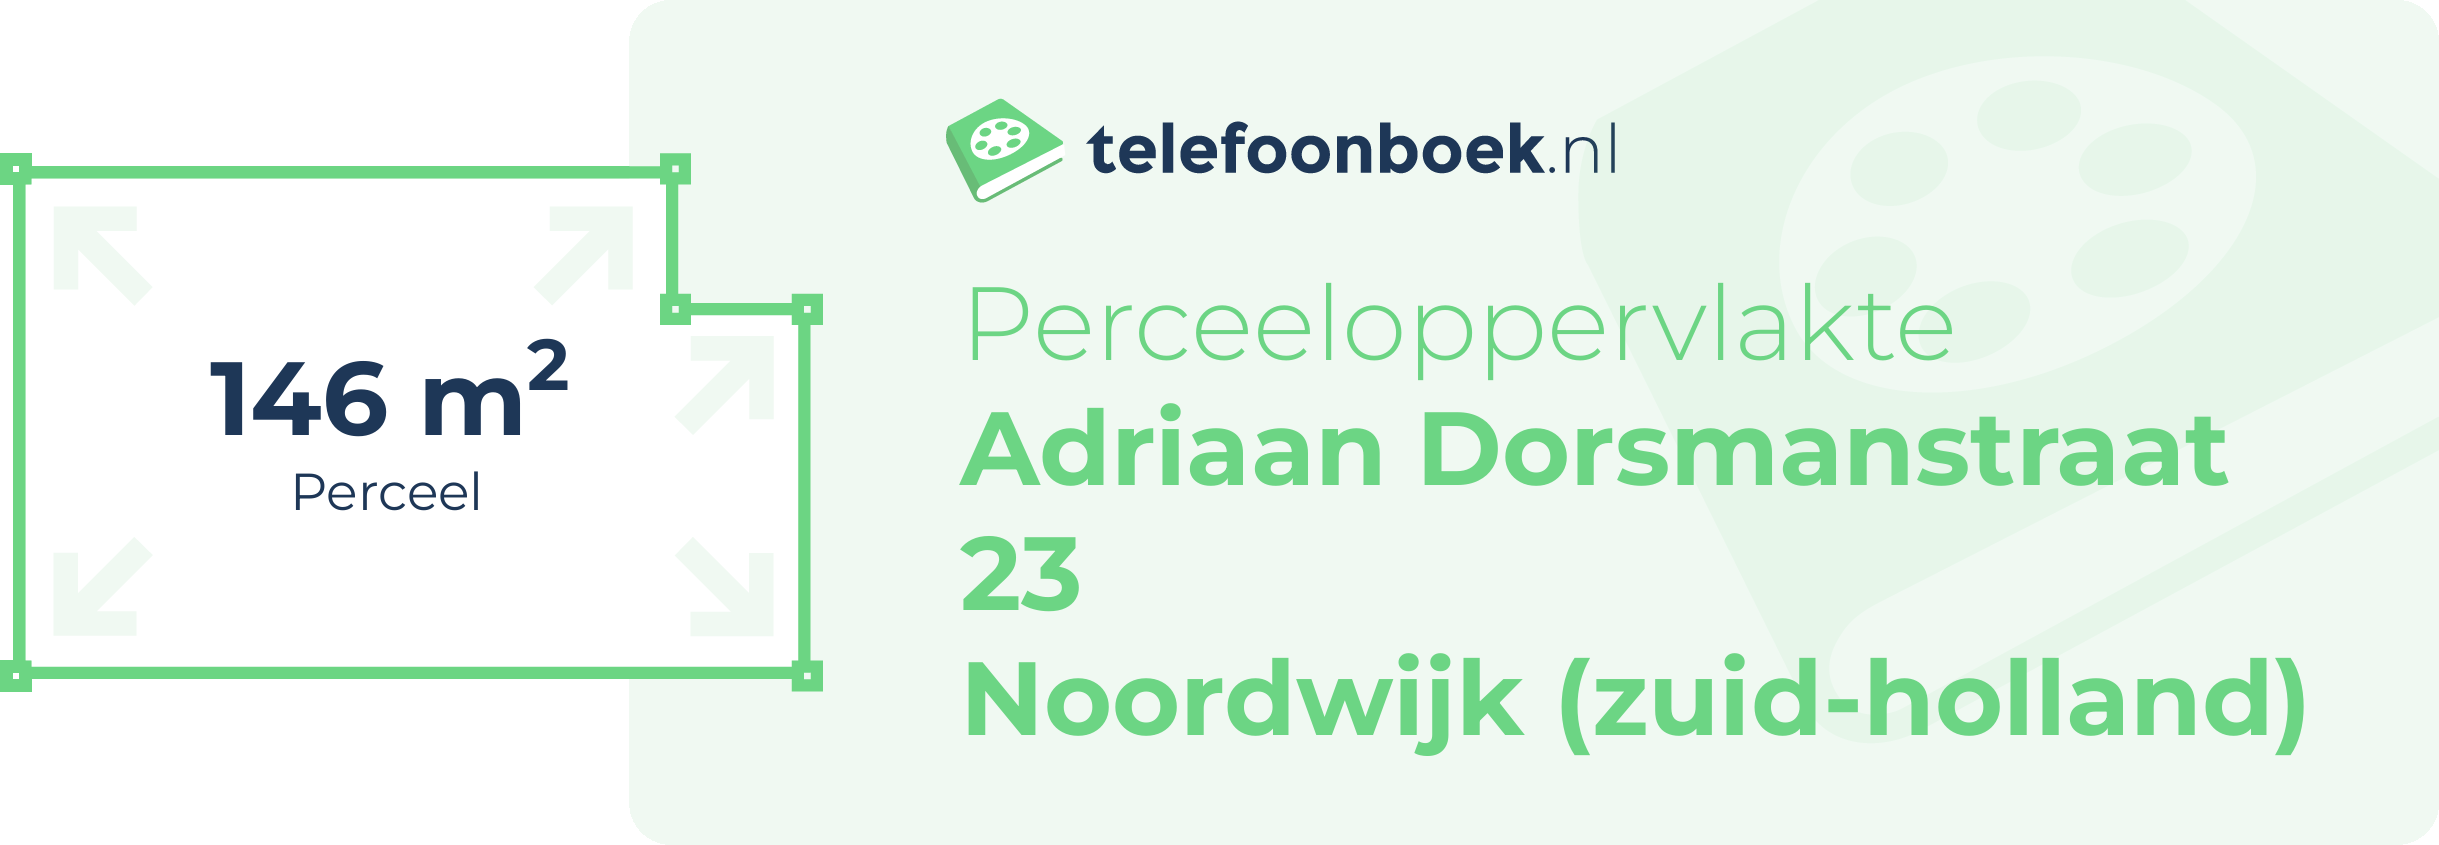 Perceeloppervlakte Adriaan Dorsmanstraat 23 Noordwijk (Zuid-Holland)